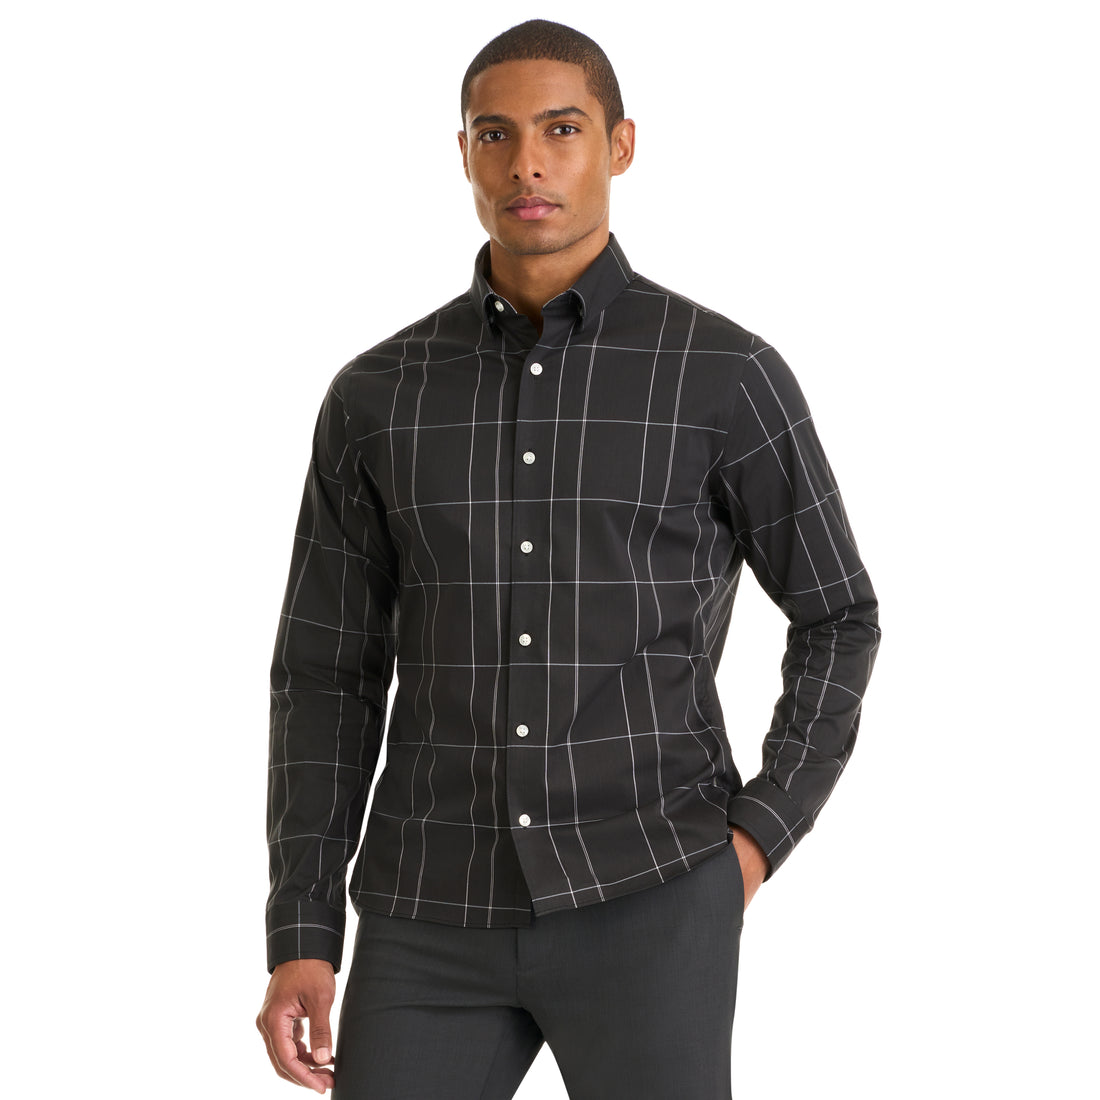 Essential Stain Shield Shirt Long Sleeve Wovens Minimal Plaid Print - Slim Fit